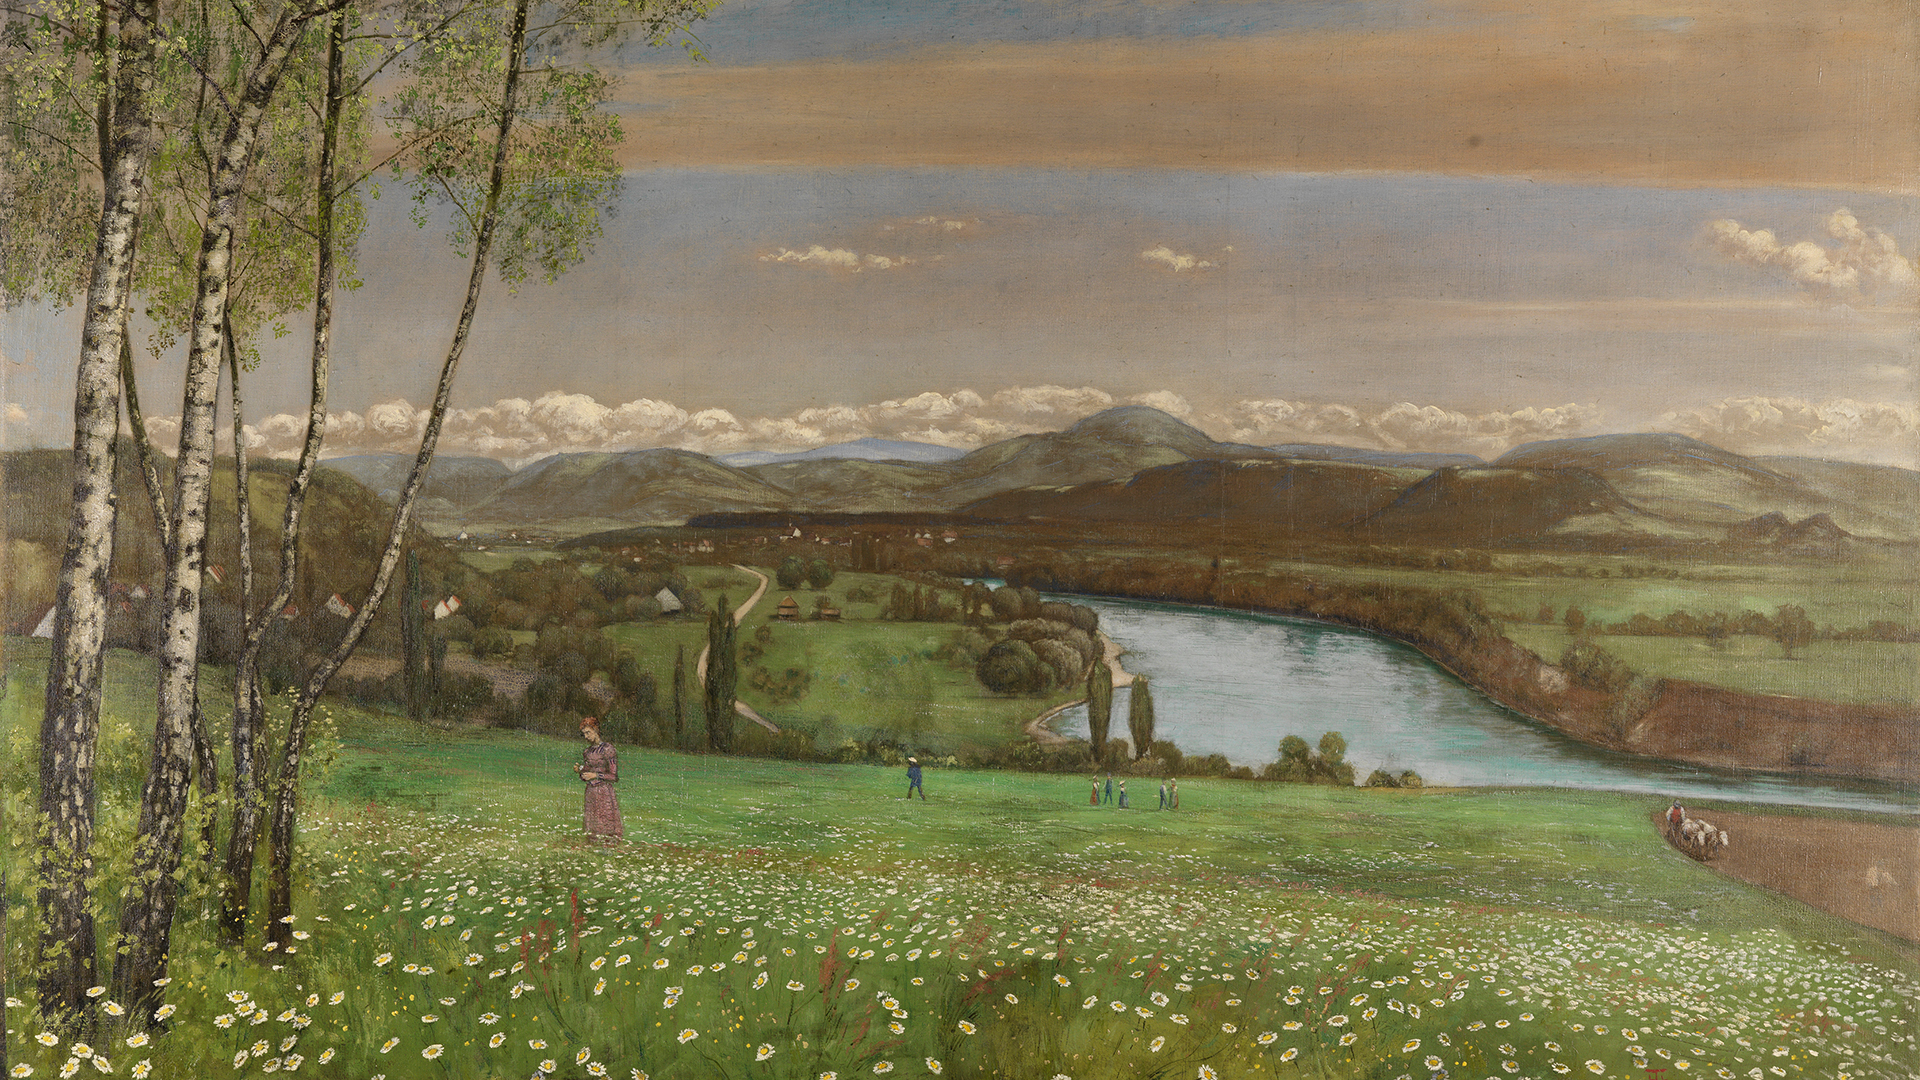 Ausschnitt aus Hans Thomas Gemälde Das Rheintal bei Säckingen: Weiter Blick von erhöhtem Standpunkt auf Flusstal. Im Vordergrund Wiese mit weißen Blumen. Der Himmel zeigt Abenddämmerung an.